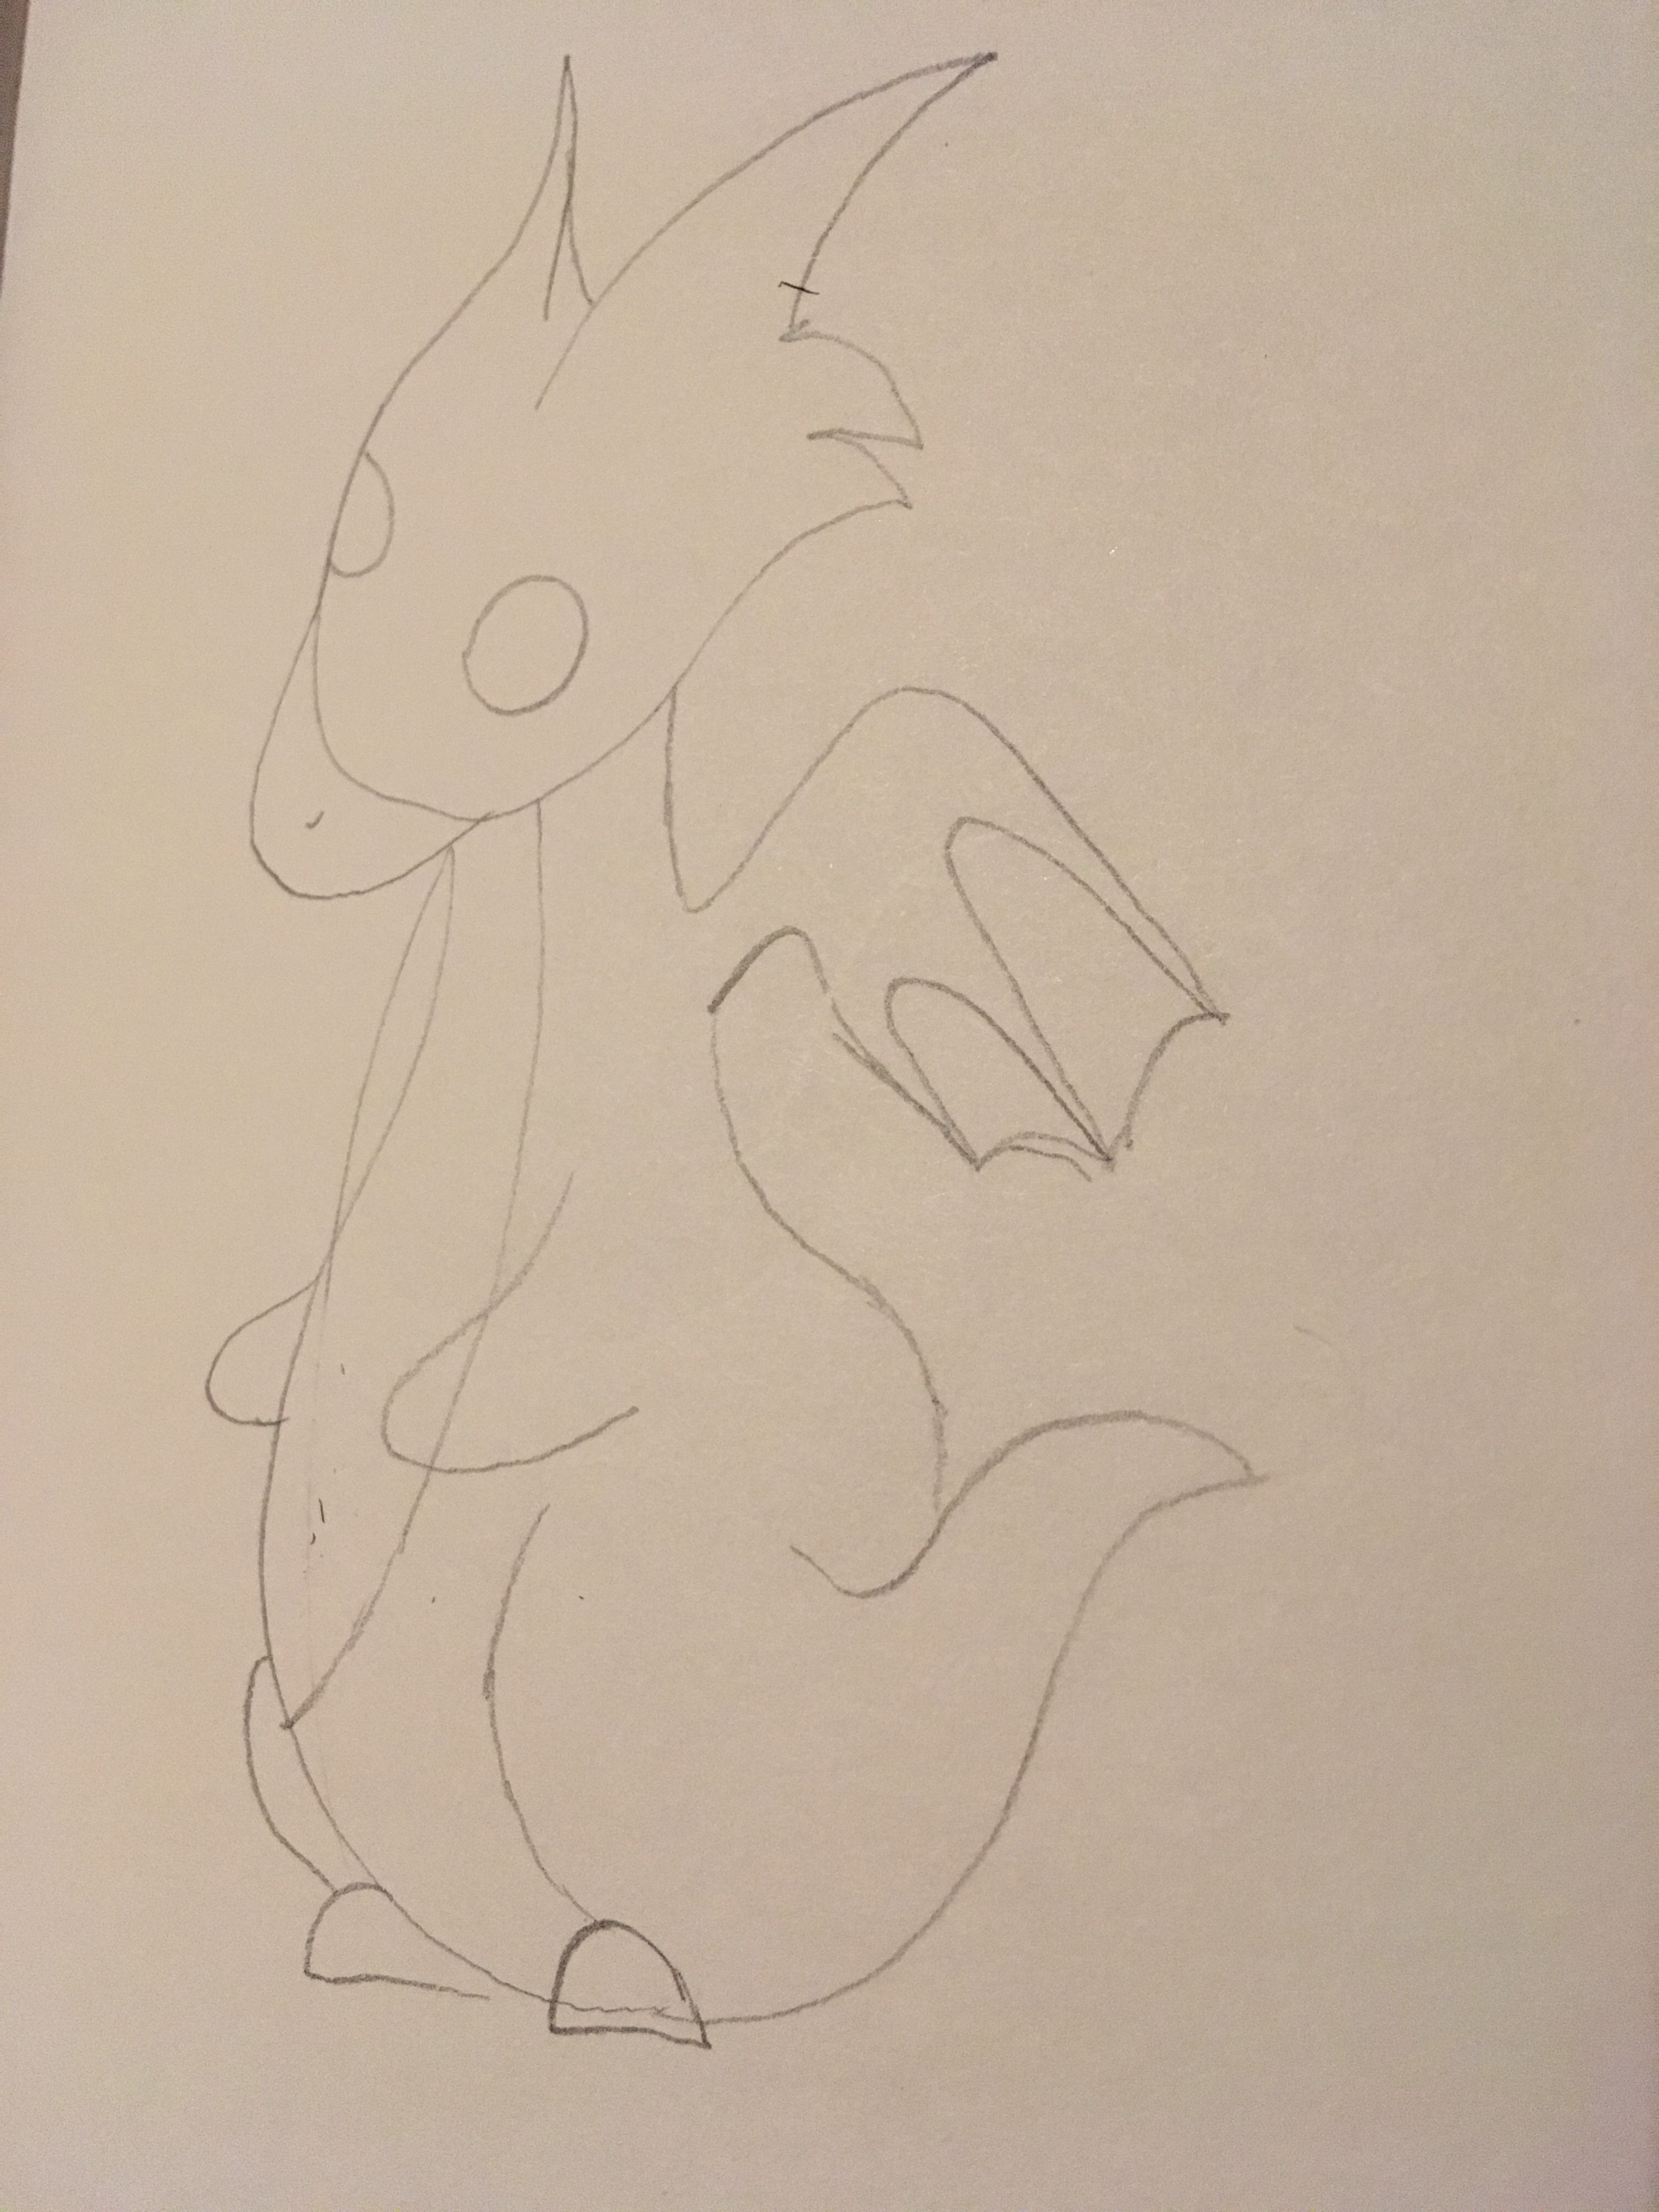 Pencil sketch of a cartoon dragon